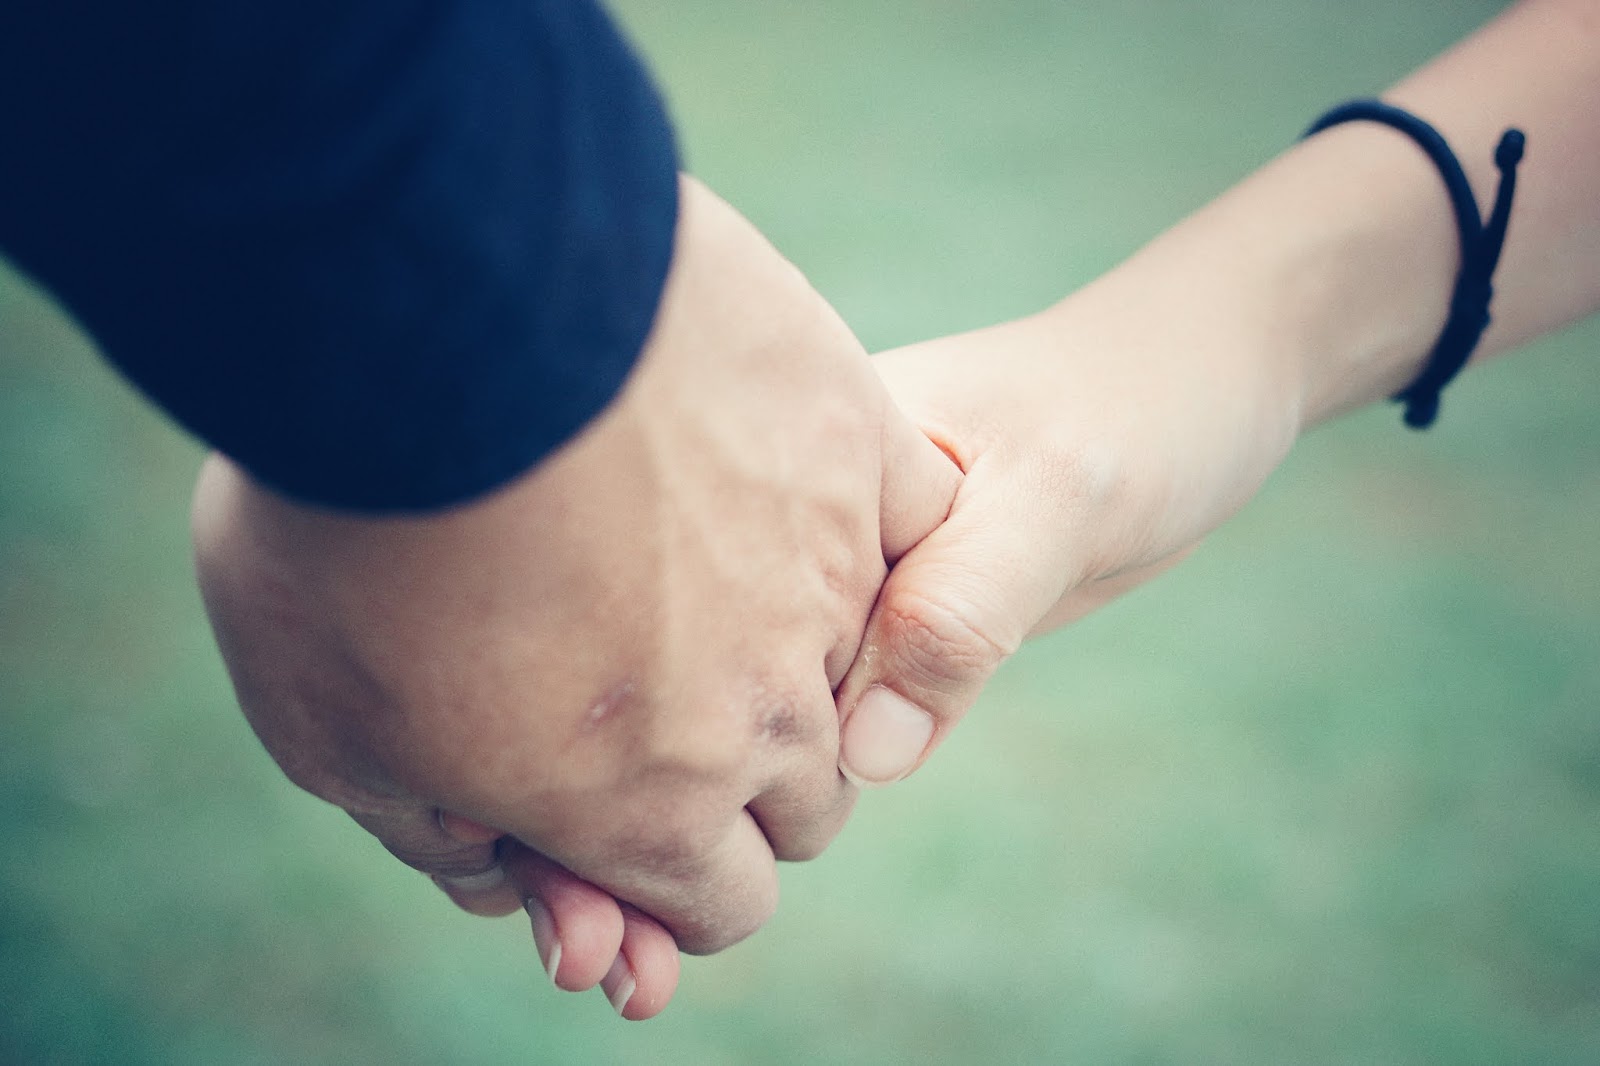 Hình nền đôi nắm tay là sự kết hợp hoàn hảo giữa tình yêu và sự kết nối. Khi chọn lựa hình nền đôi nắm tay, bạn đã thể hiện rằng tình yêu của mình là một sức mạnh vững chắc, có khả năng tạo nên một kết nối đến với người yêu của mình. Hãy để những bức hình nền này giúp bạn cảm thấy tình yêu của mình mãi mãi luôn chắc nịch nhé!